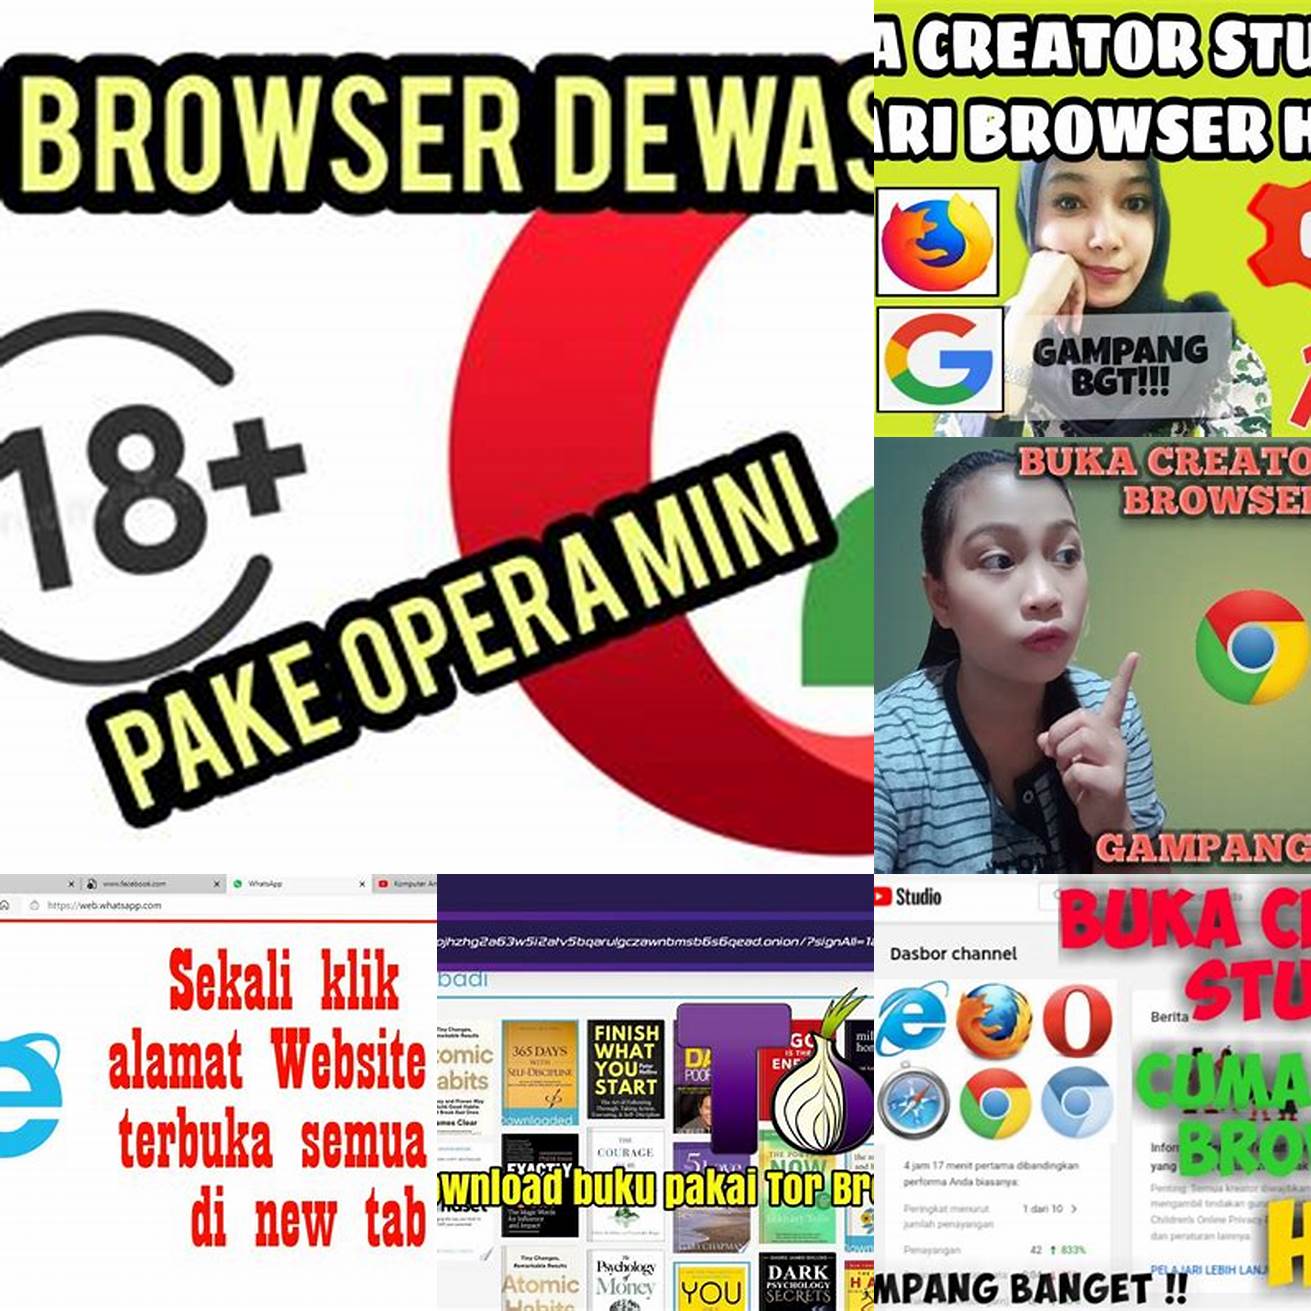 Buka browser